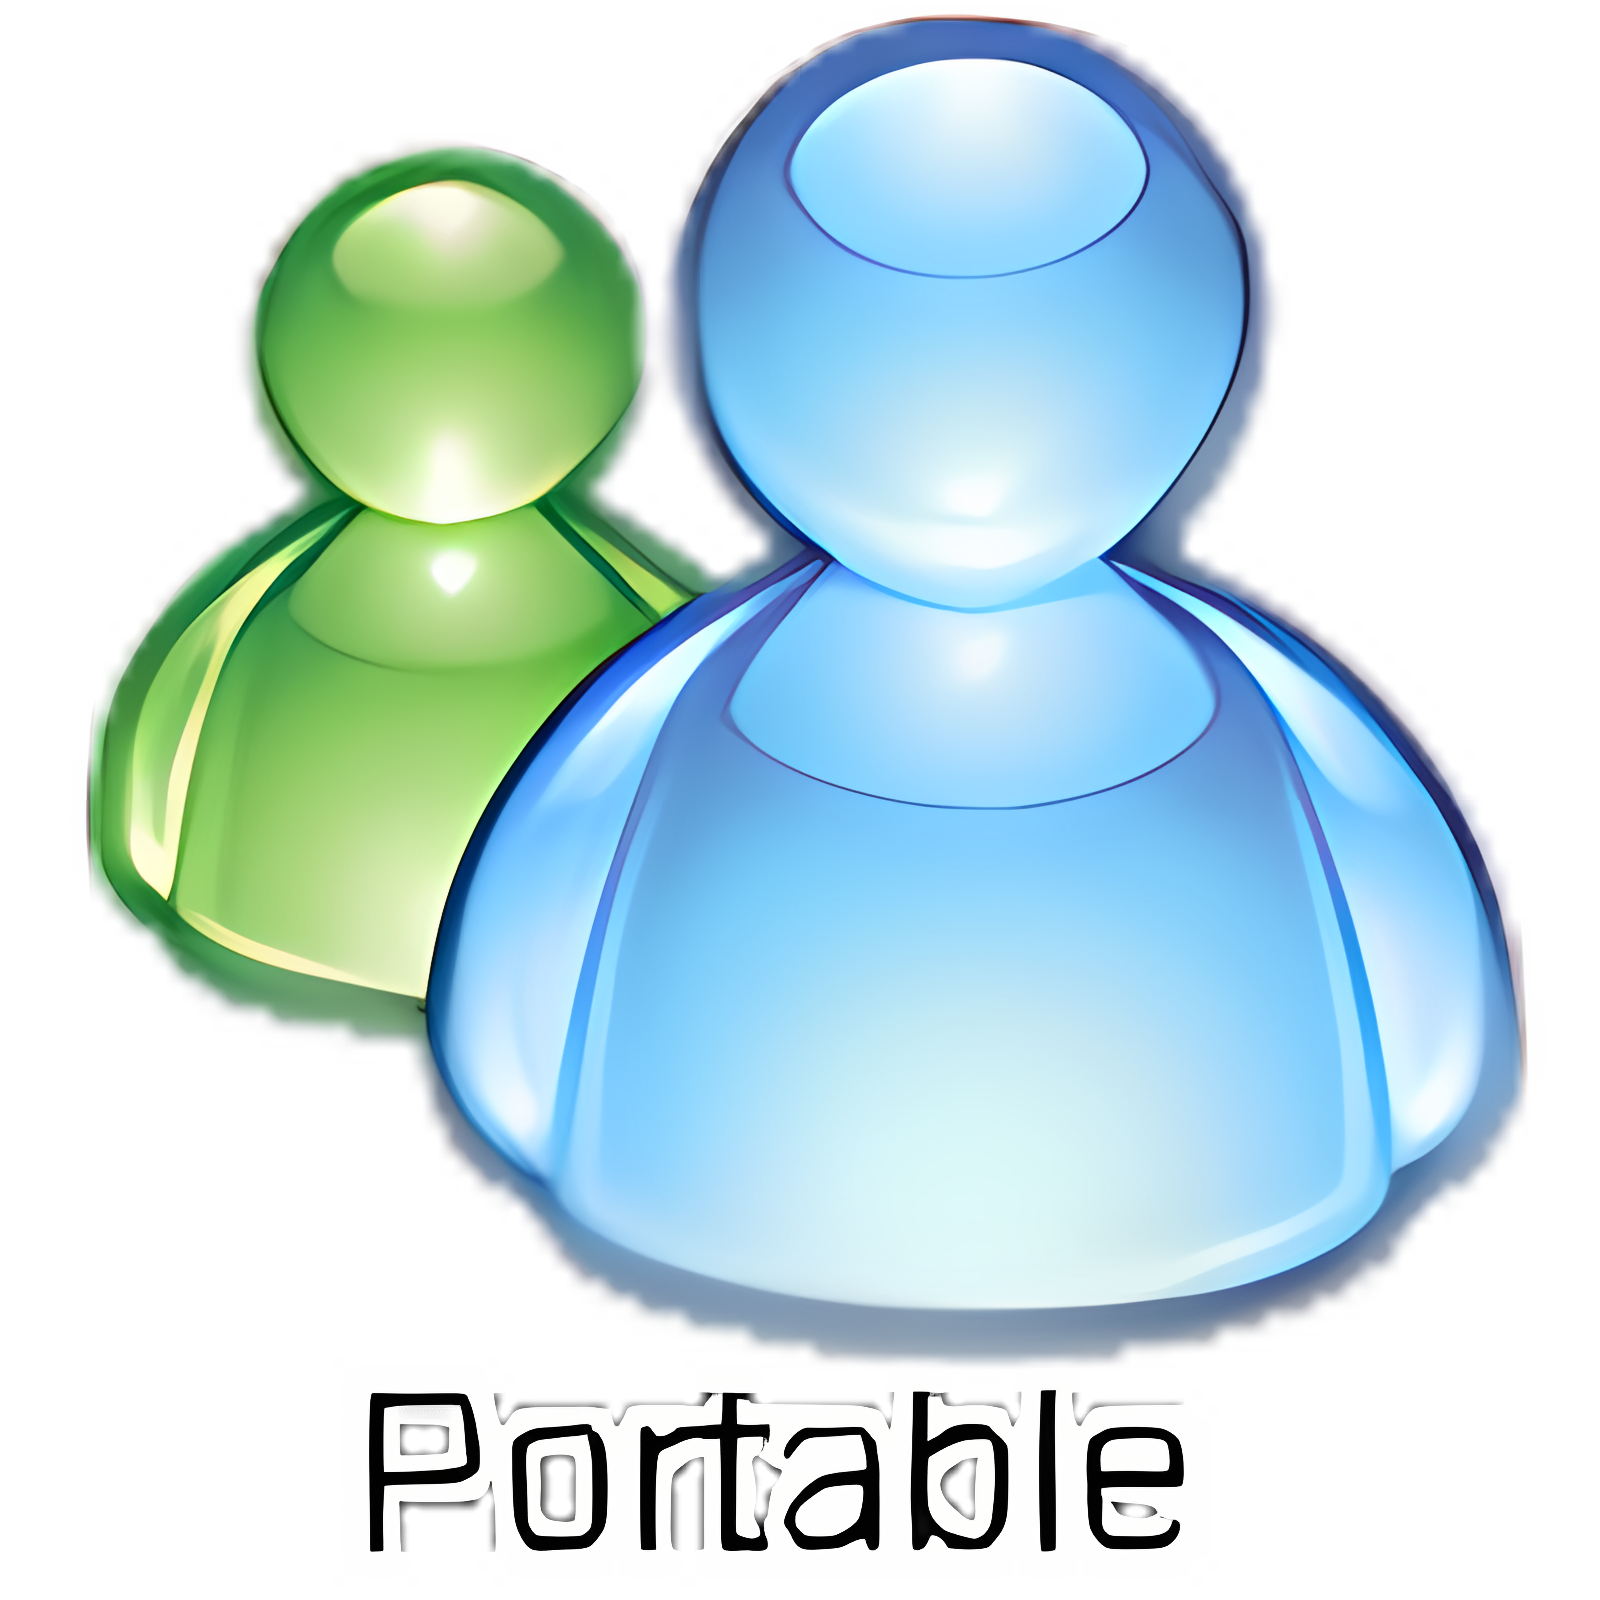 Download Windows Live Messenger Portable Install Latest App downloader